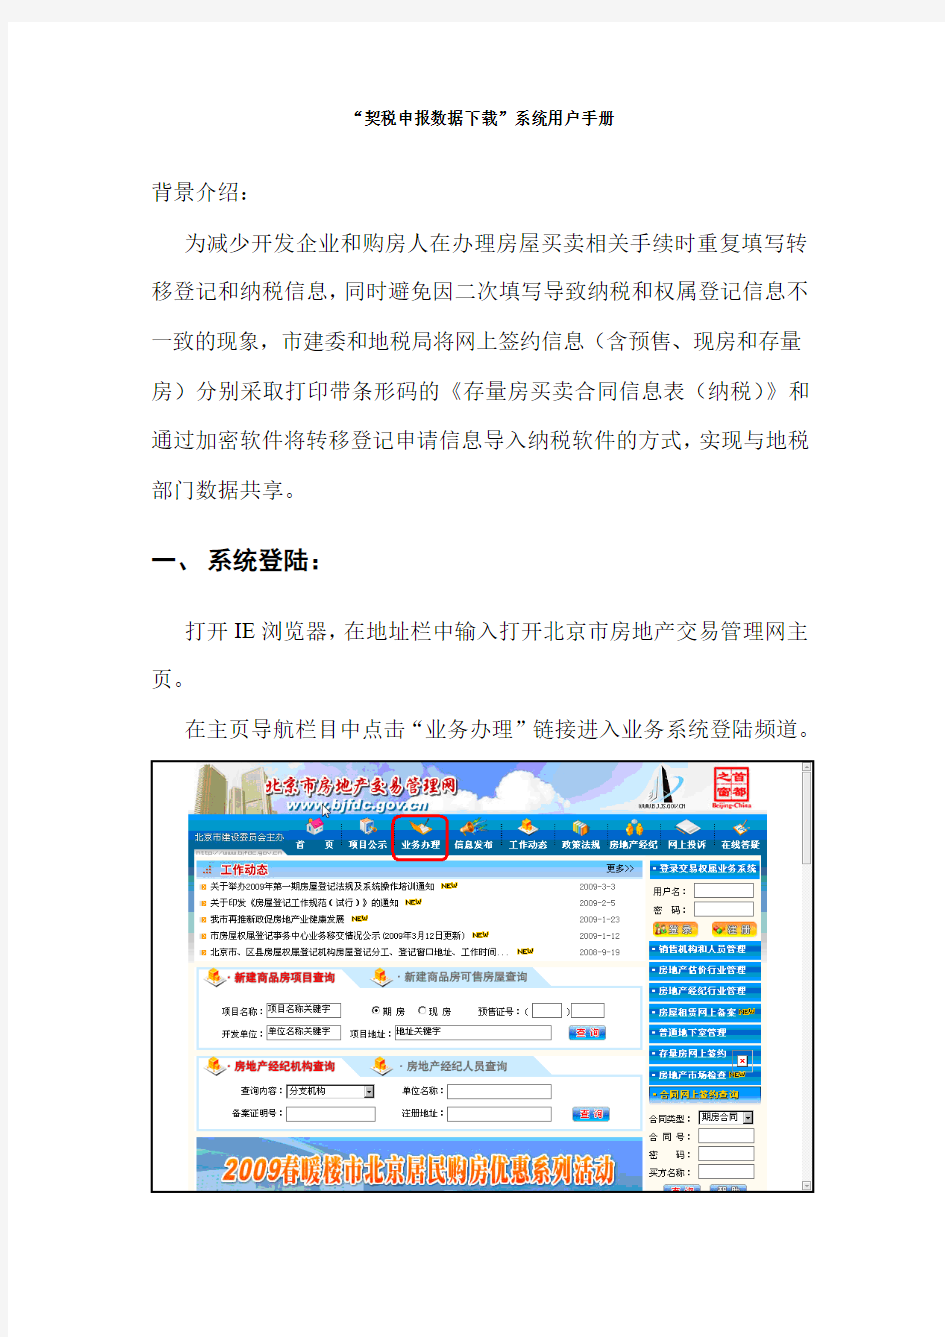 契税申报数据下载系统用户手册-北京市房地产交易管理网--